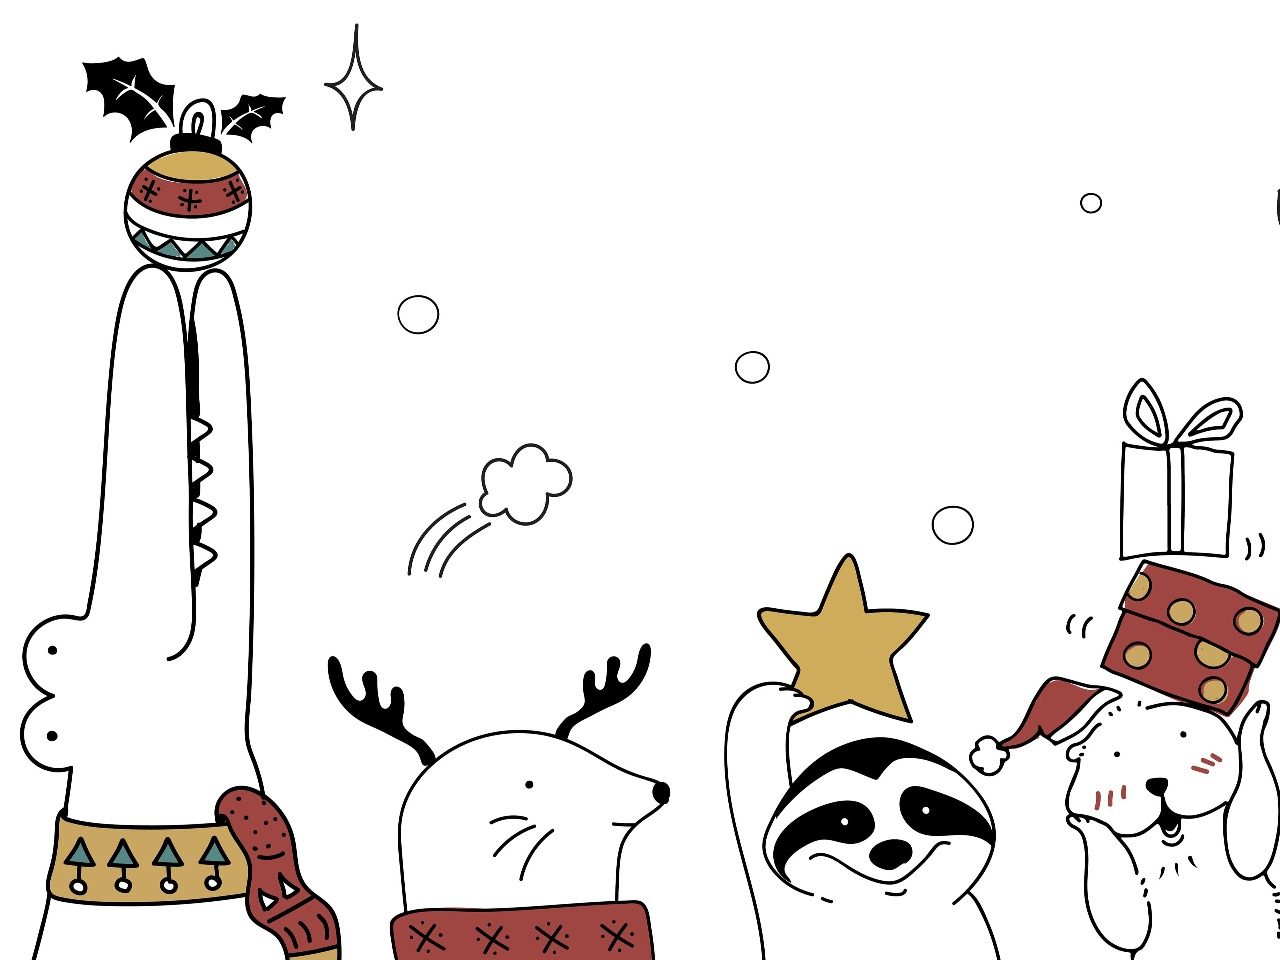 Dessin de Noël pour petits enfants par rawpixel sur freepik